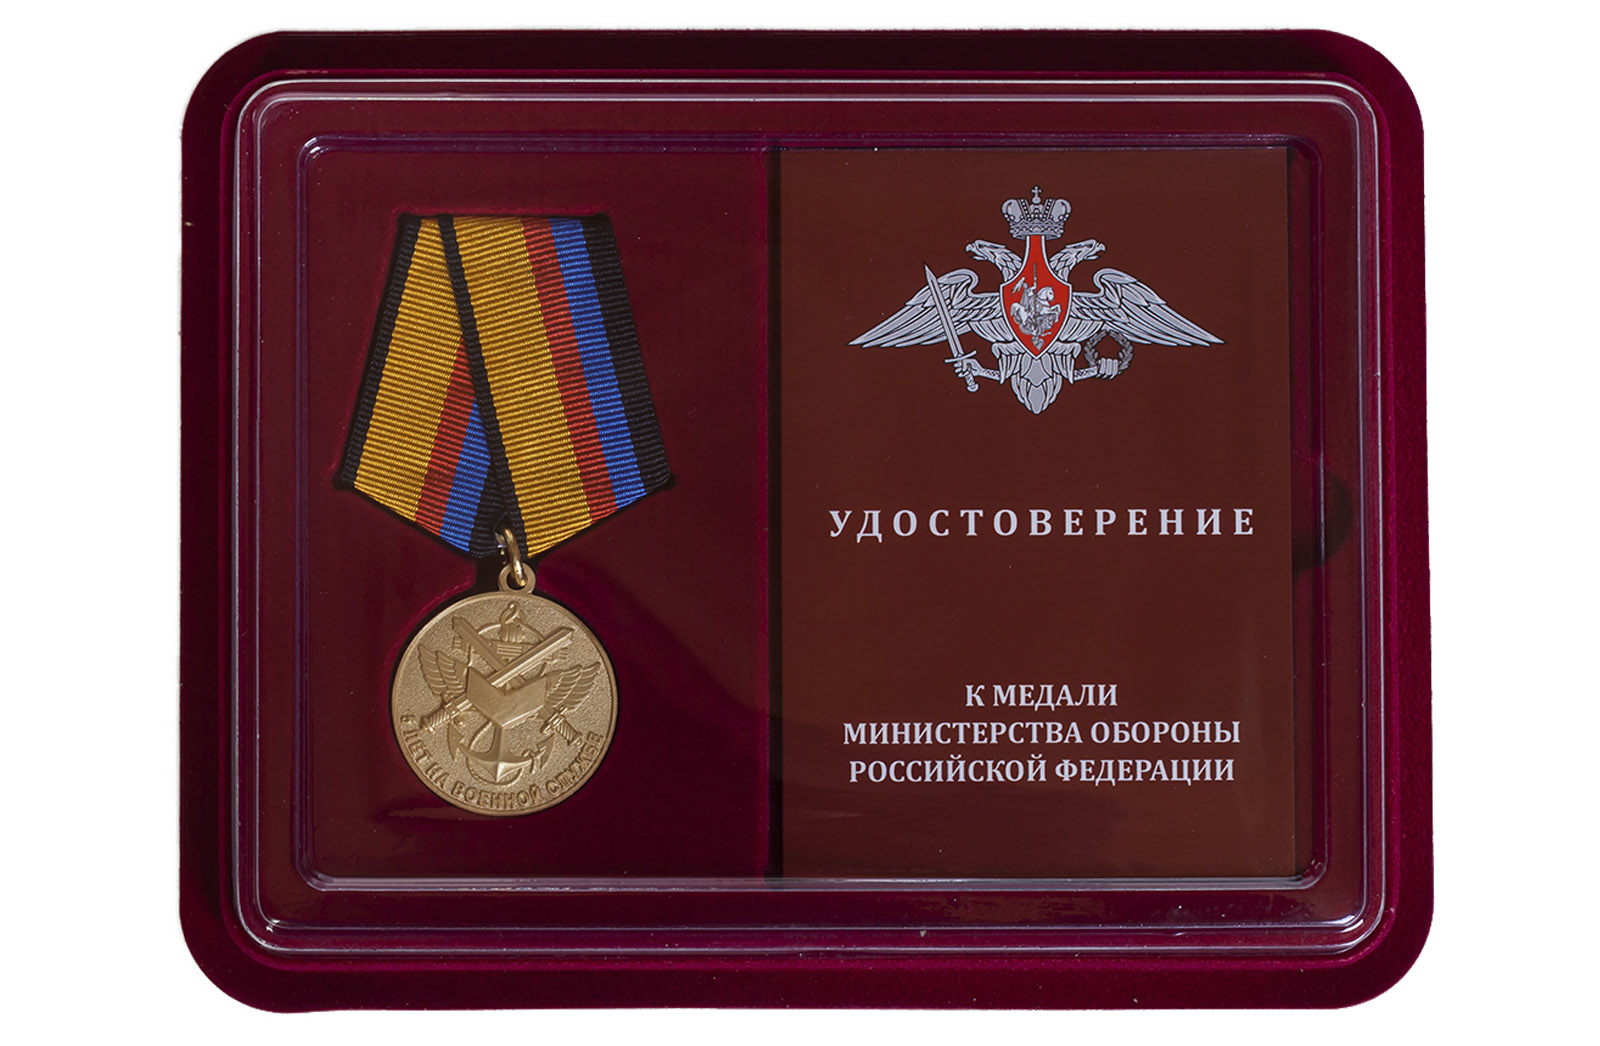 Купить медаль МО РФ 5 лет на военной службе в подарок мужчине